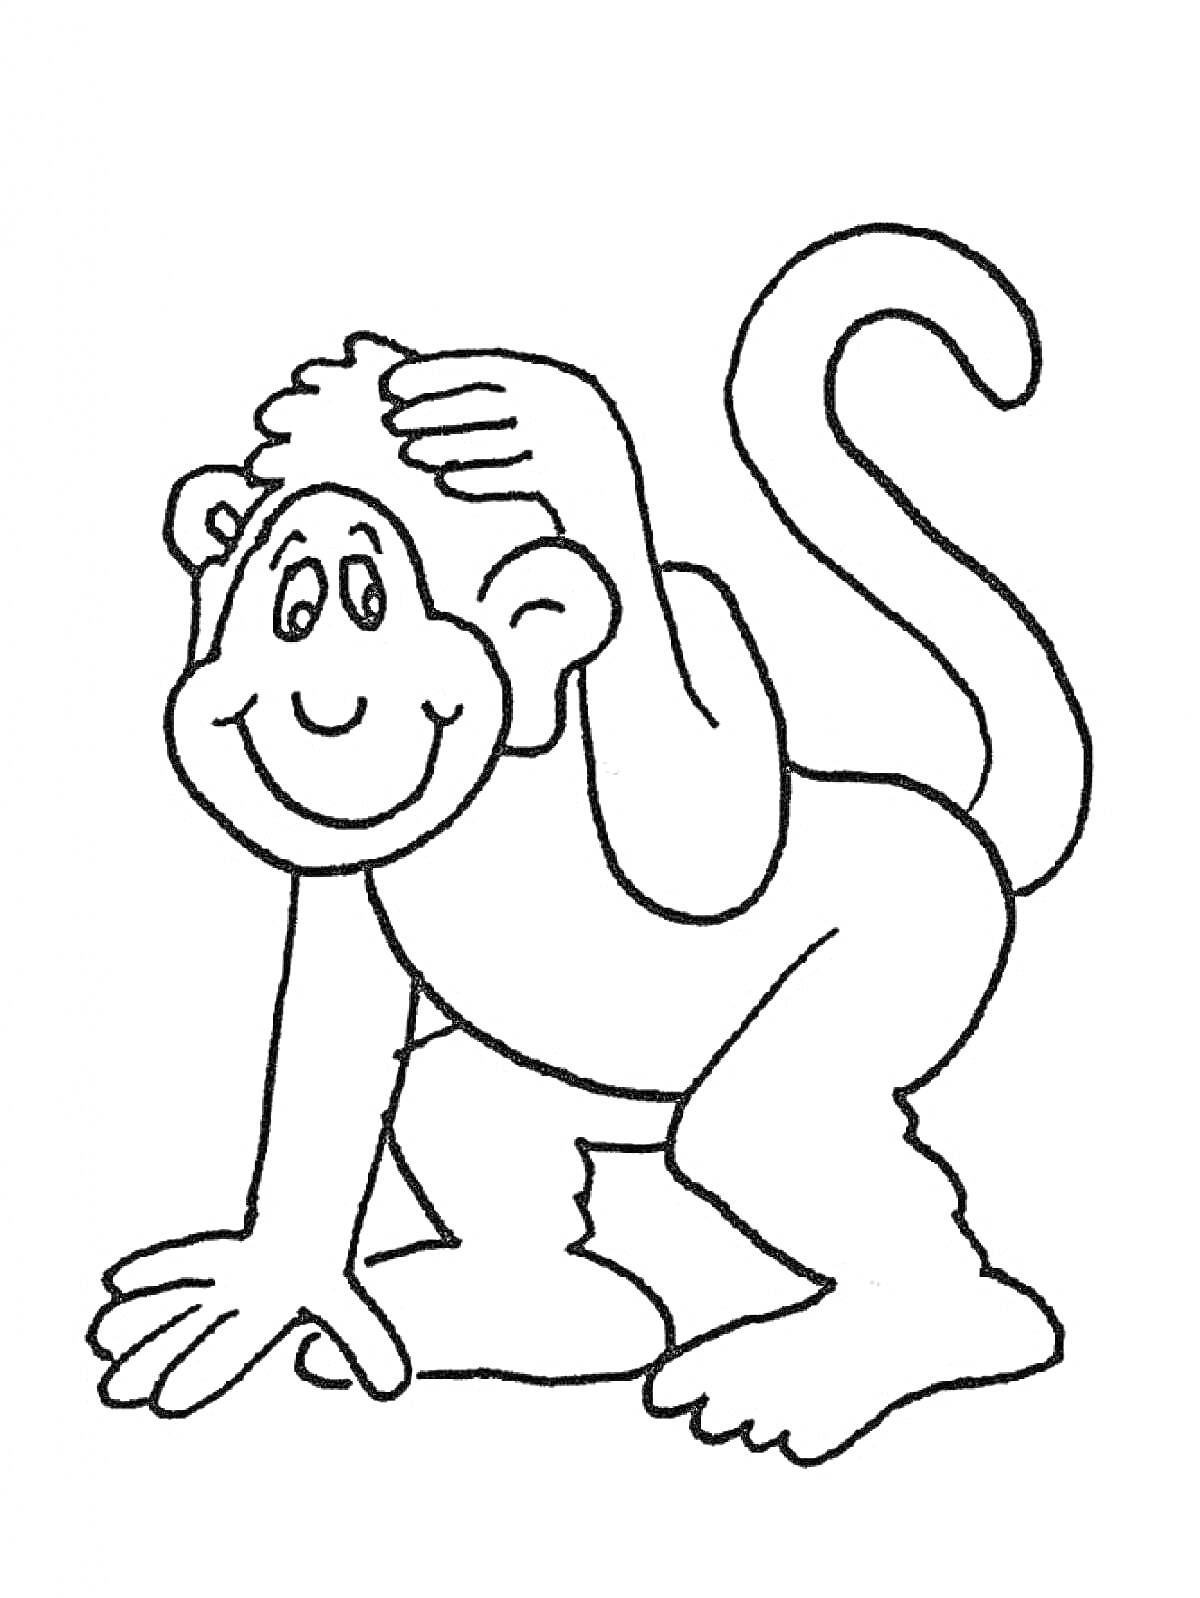 Раскраска Улыбающаяся обезьяна с рукой на голове